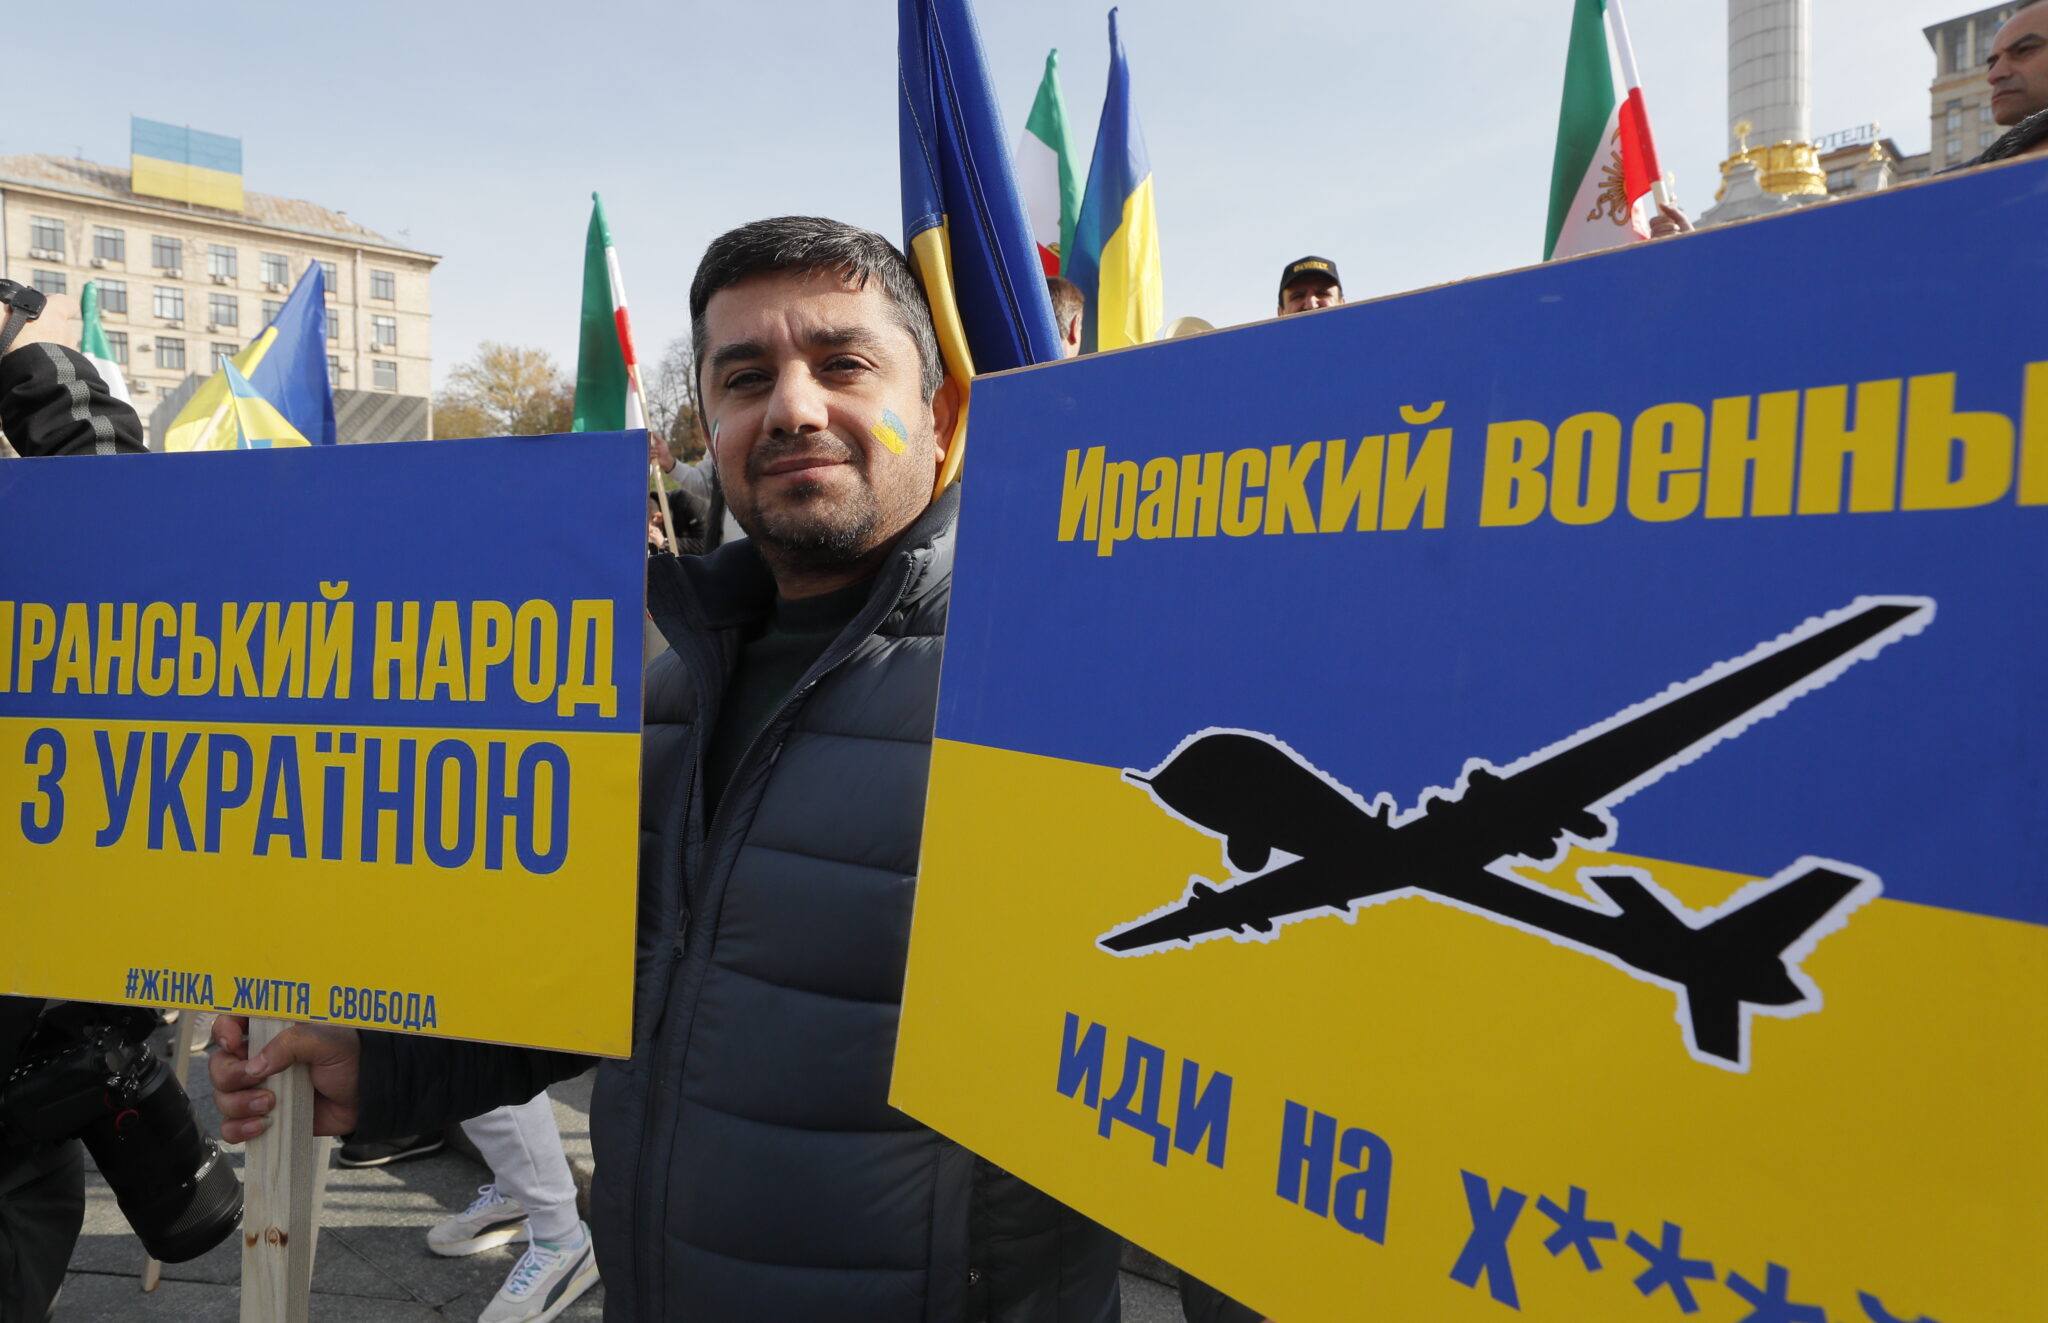 Представитель иранской диаспоры в Украине на митинге против поставок Ираном дронов в Россию, 28 октября 2022 года. Фото EPA/SERGEY DOLZHENKO/Scanpix/Leta.